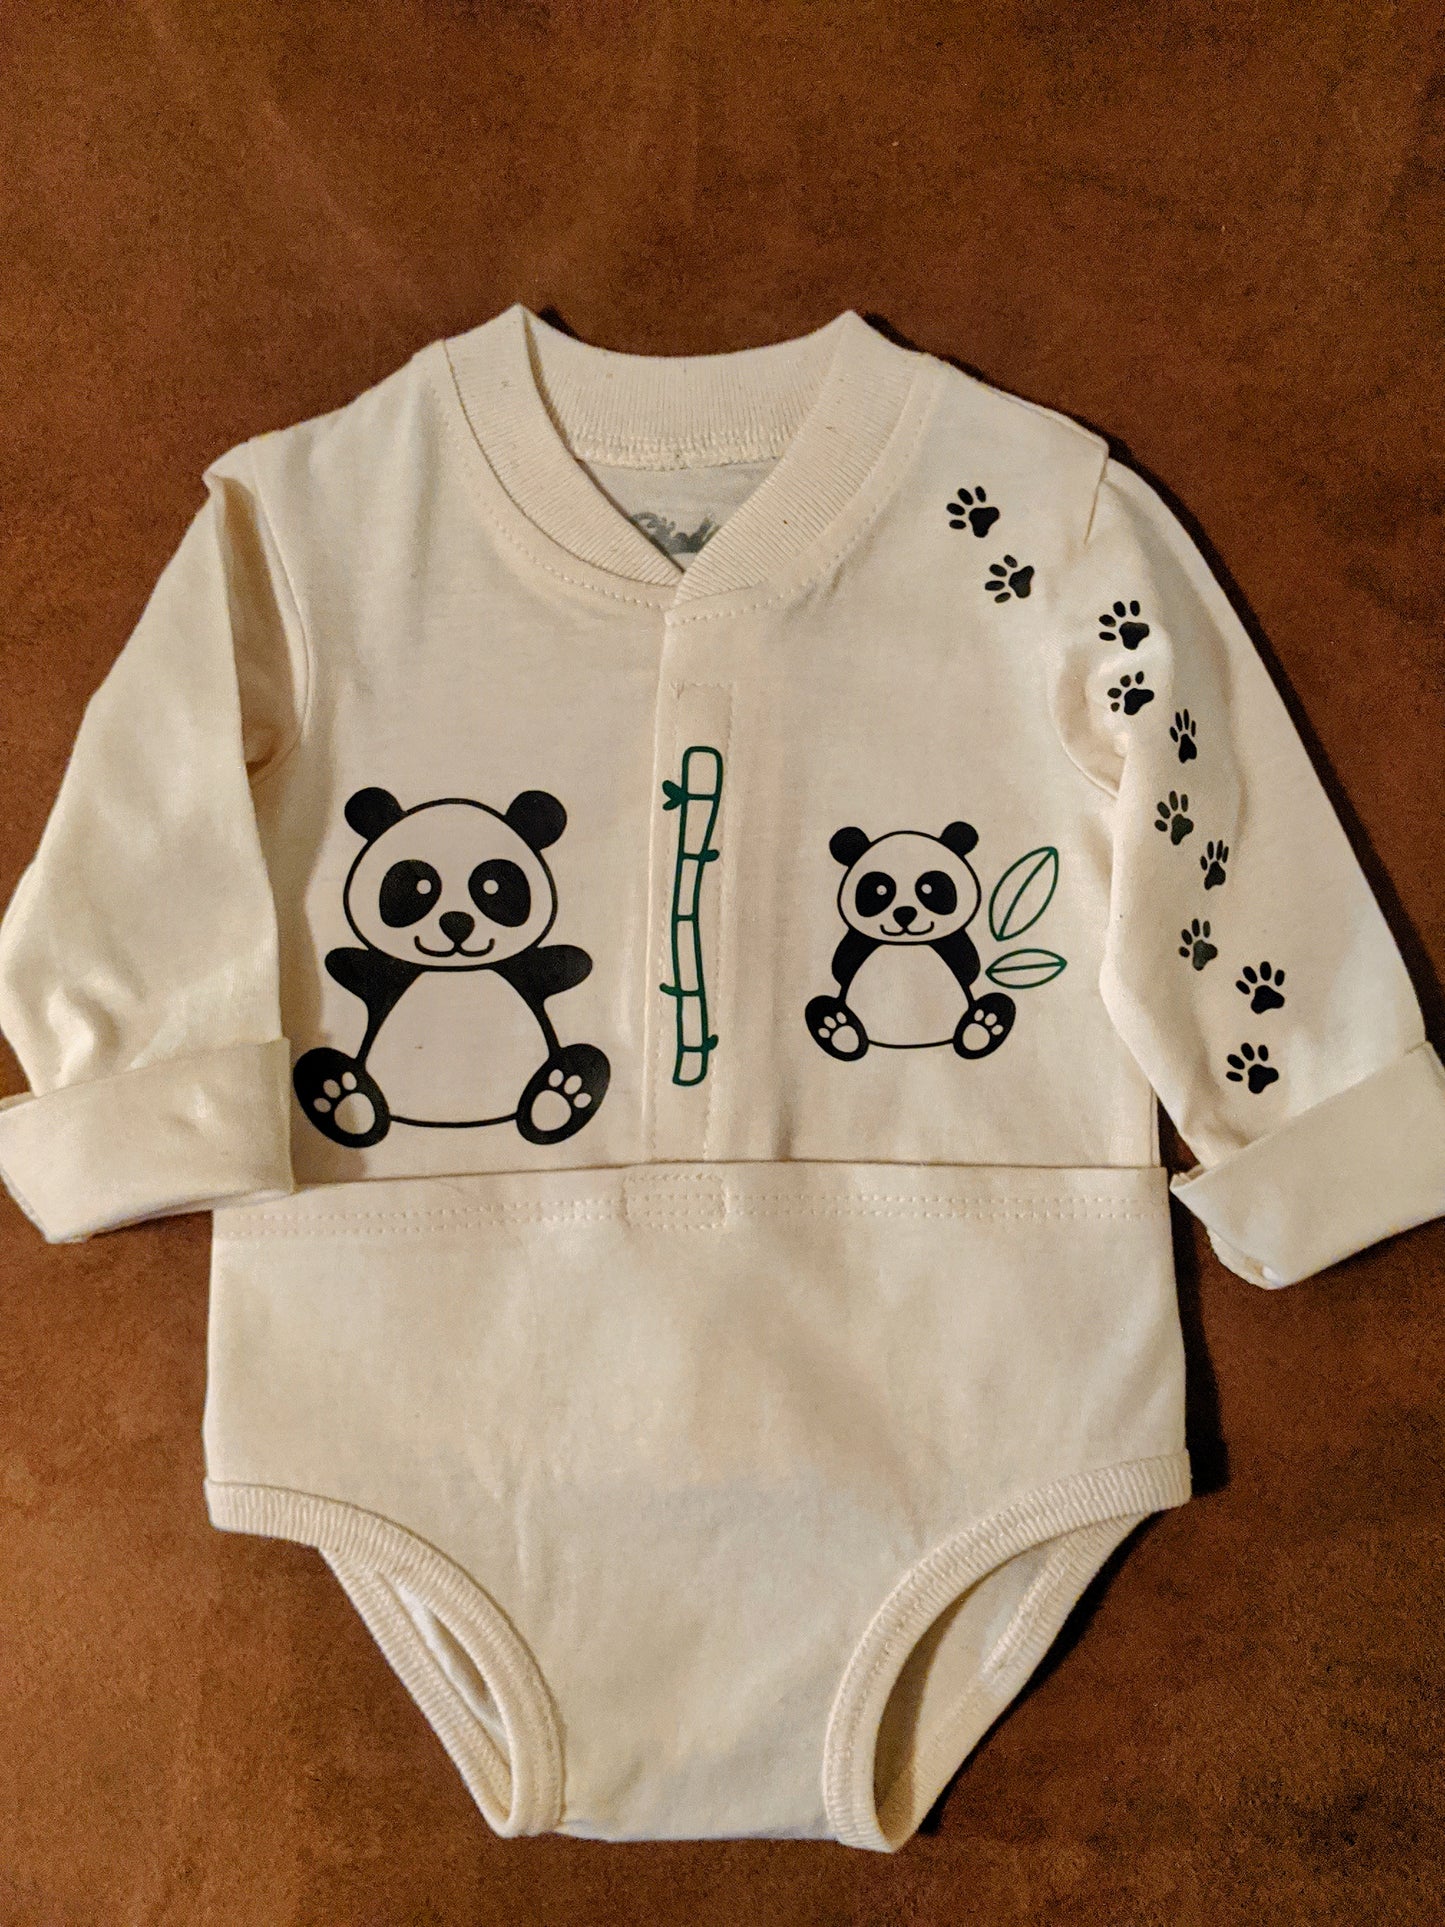 Pandamonium Baby Bodysuit